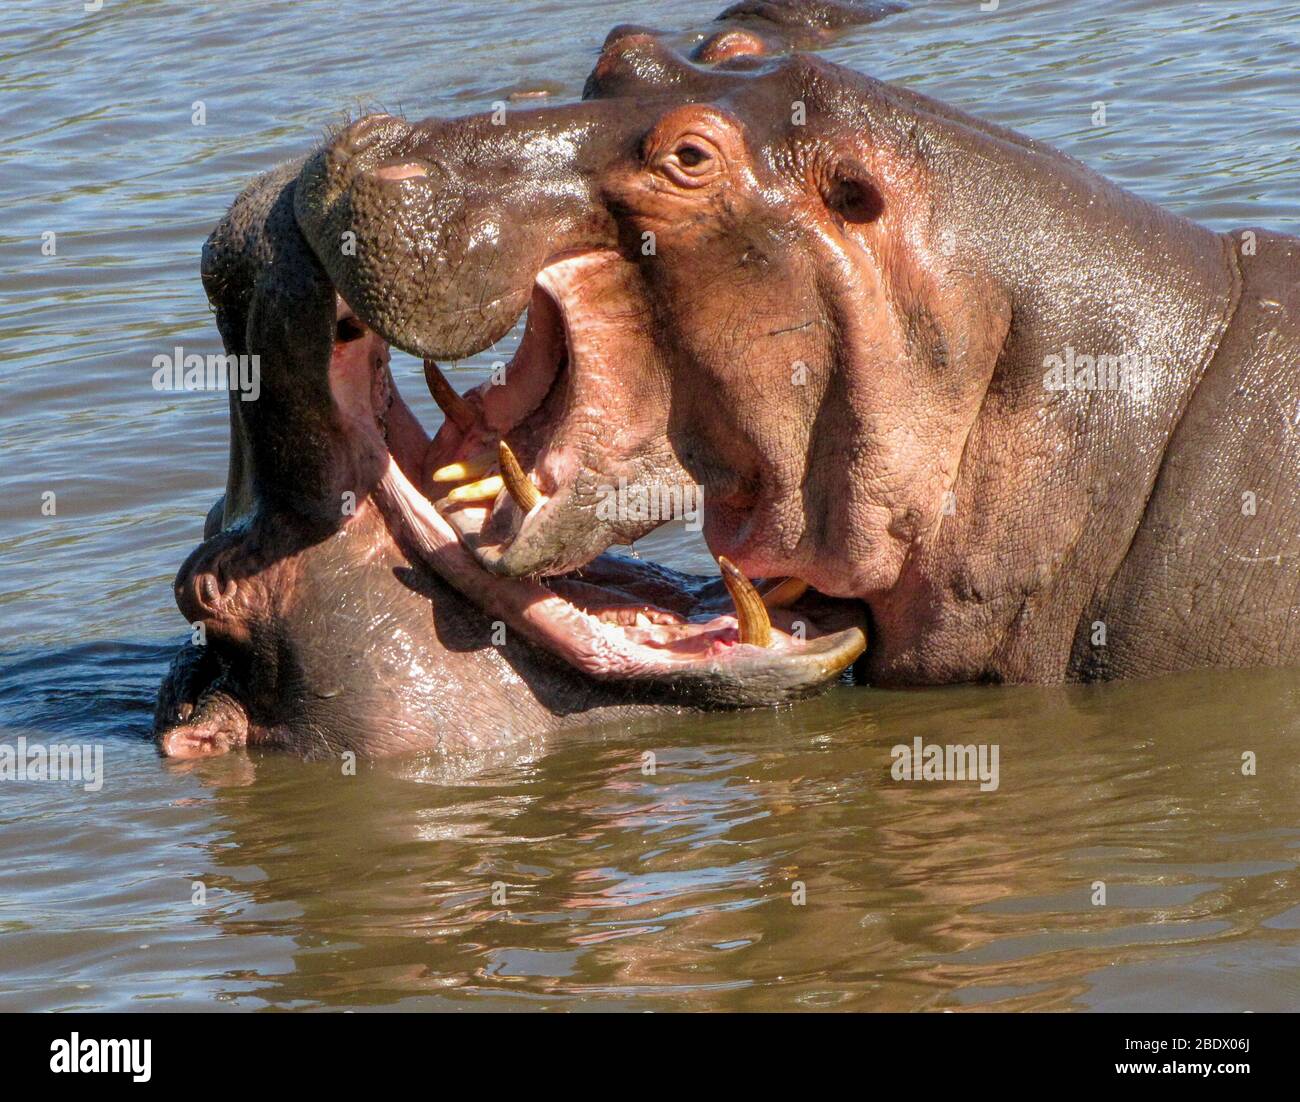 Zwei Nilpferde spielen in einem Fluss im Serengeti Nationalpark ist eine Region von Wiesen und Wäldern in der Vereinigten Republik Tansania Stockfoto